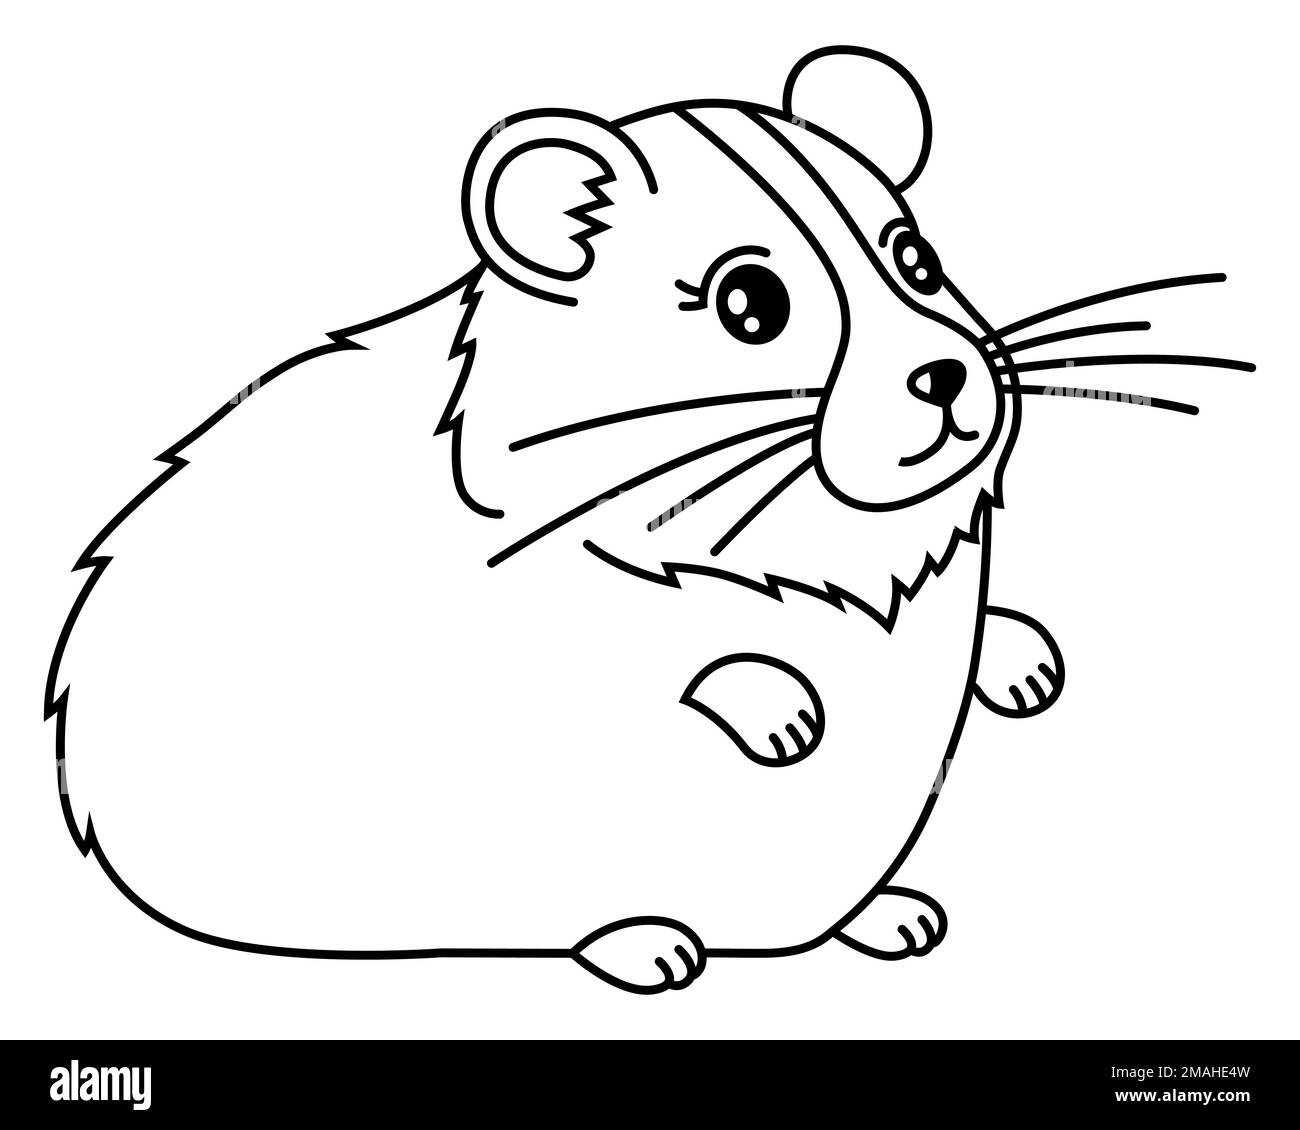 Süßer, fetter, haariger Hamster in einem linearen Stil. Abbildung eines flachen Vektors. Stock Vektor